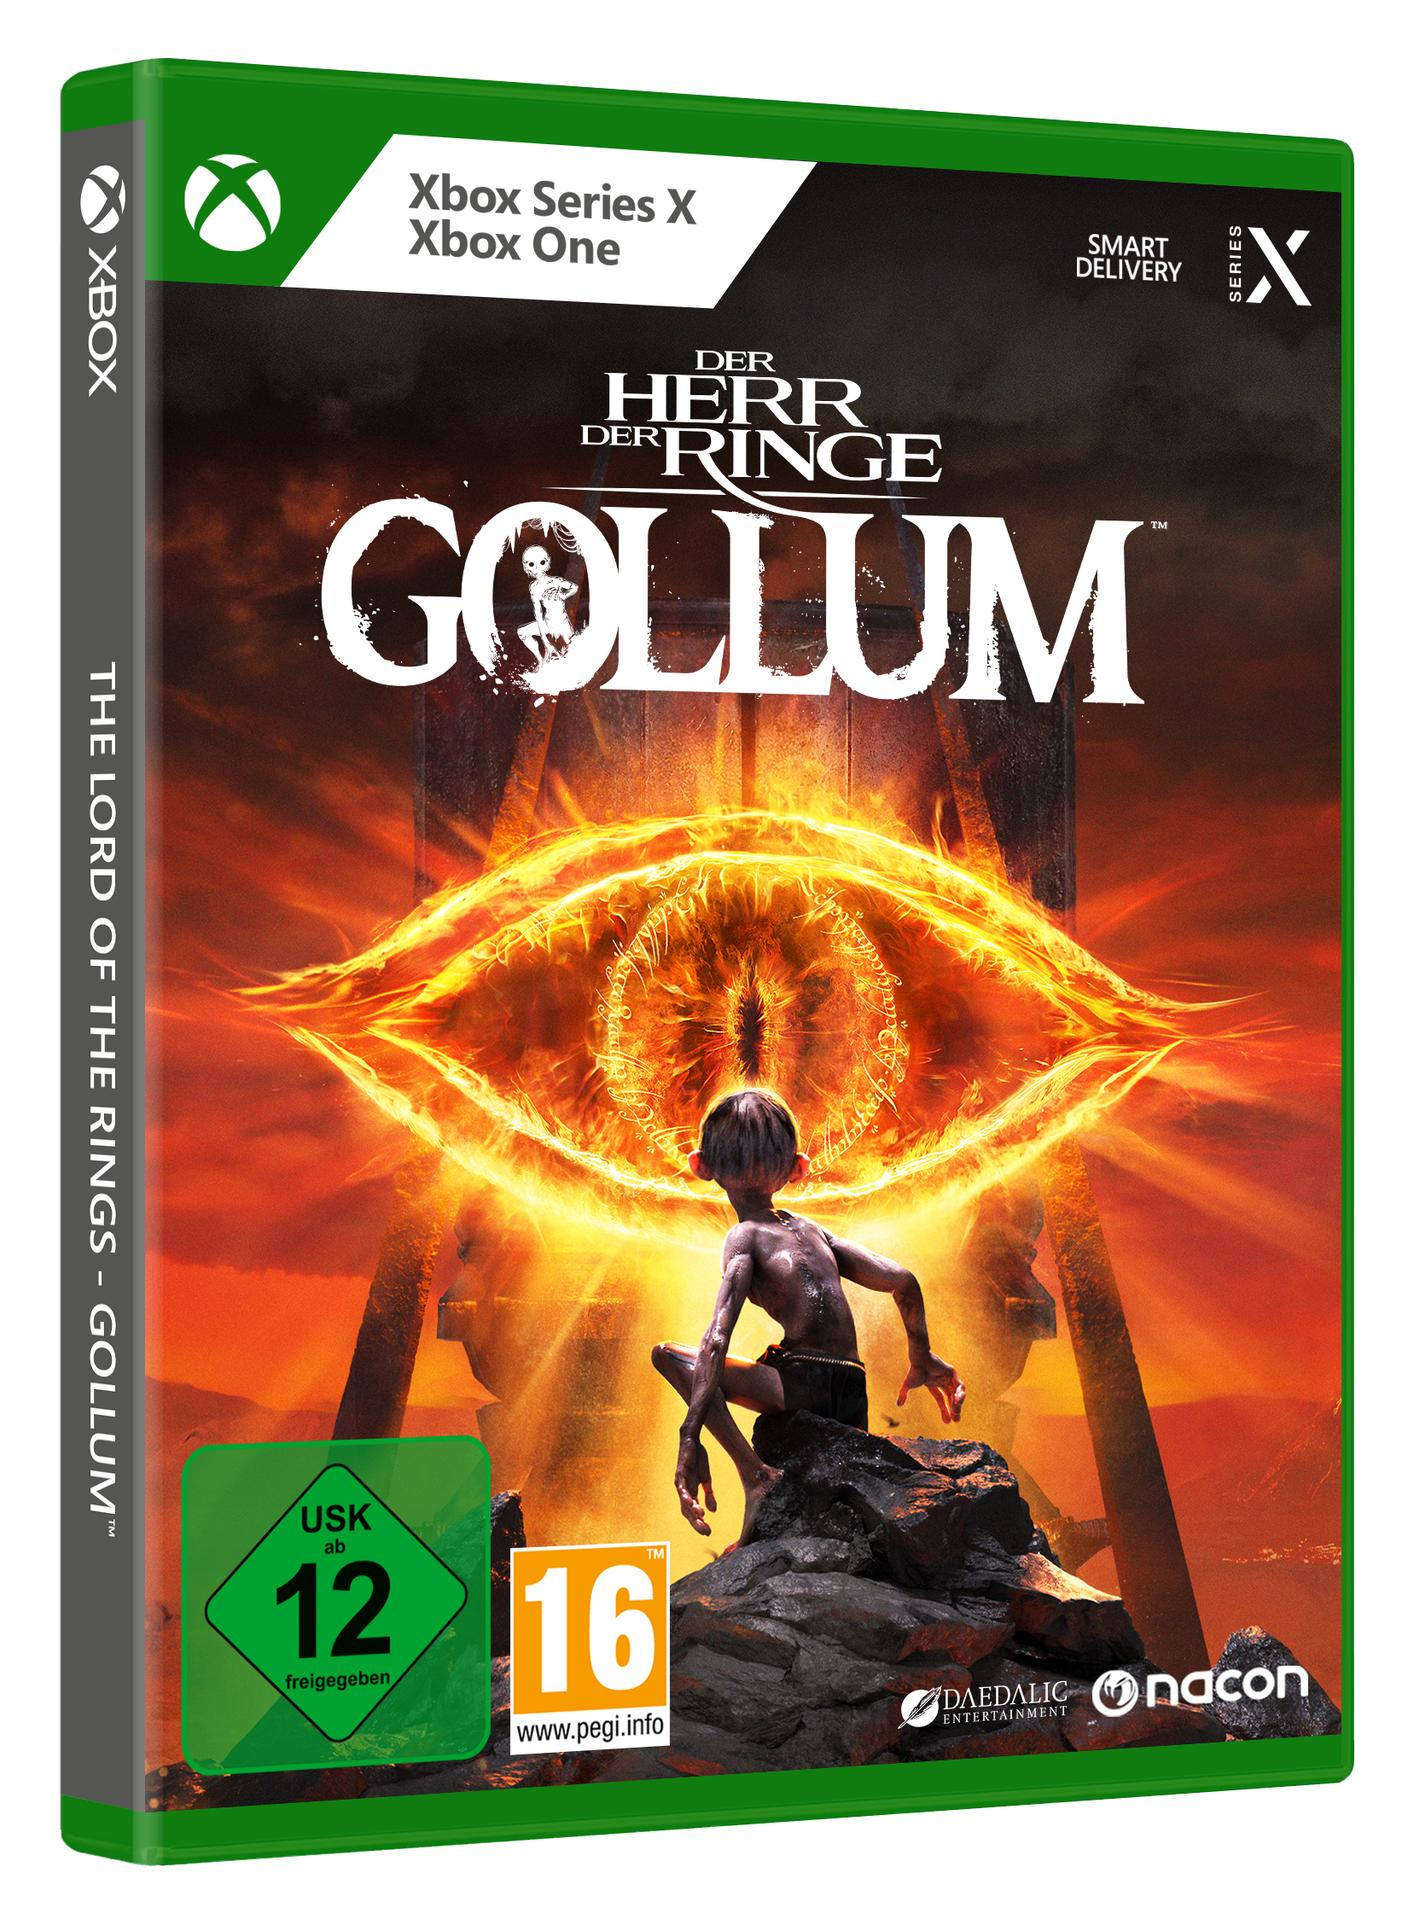 Gollum [Xbox Xbox One Der - der Herr X] Series & Ringe: